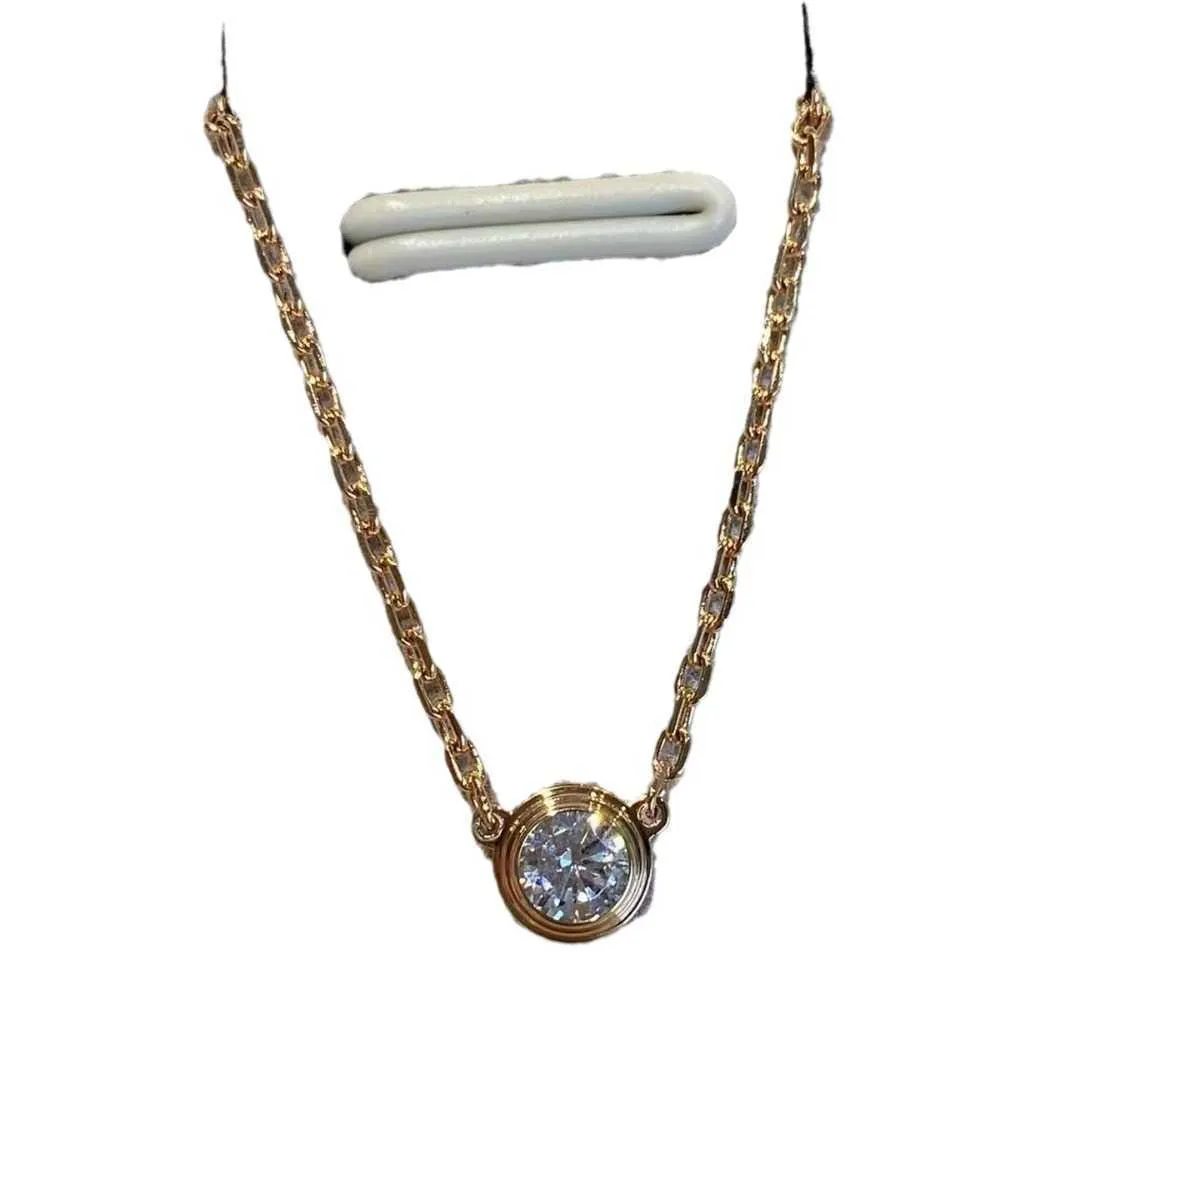 Designer originale Carter Classic Single Diamond Necklace Spesso Gold 18K One UFO Neckchain Bubble Collar Chain Womens Edition Womens Edition